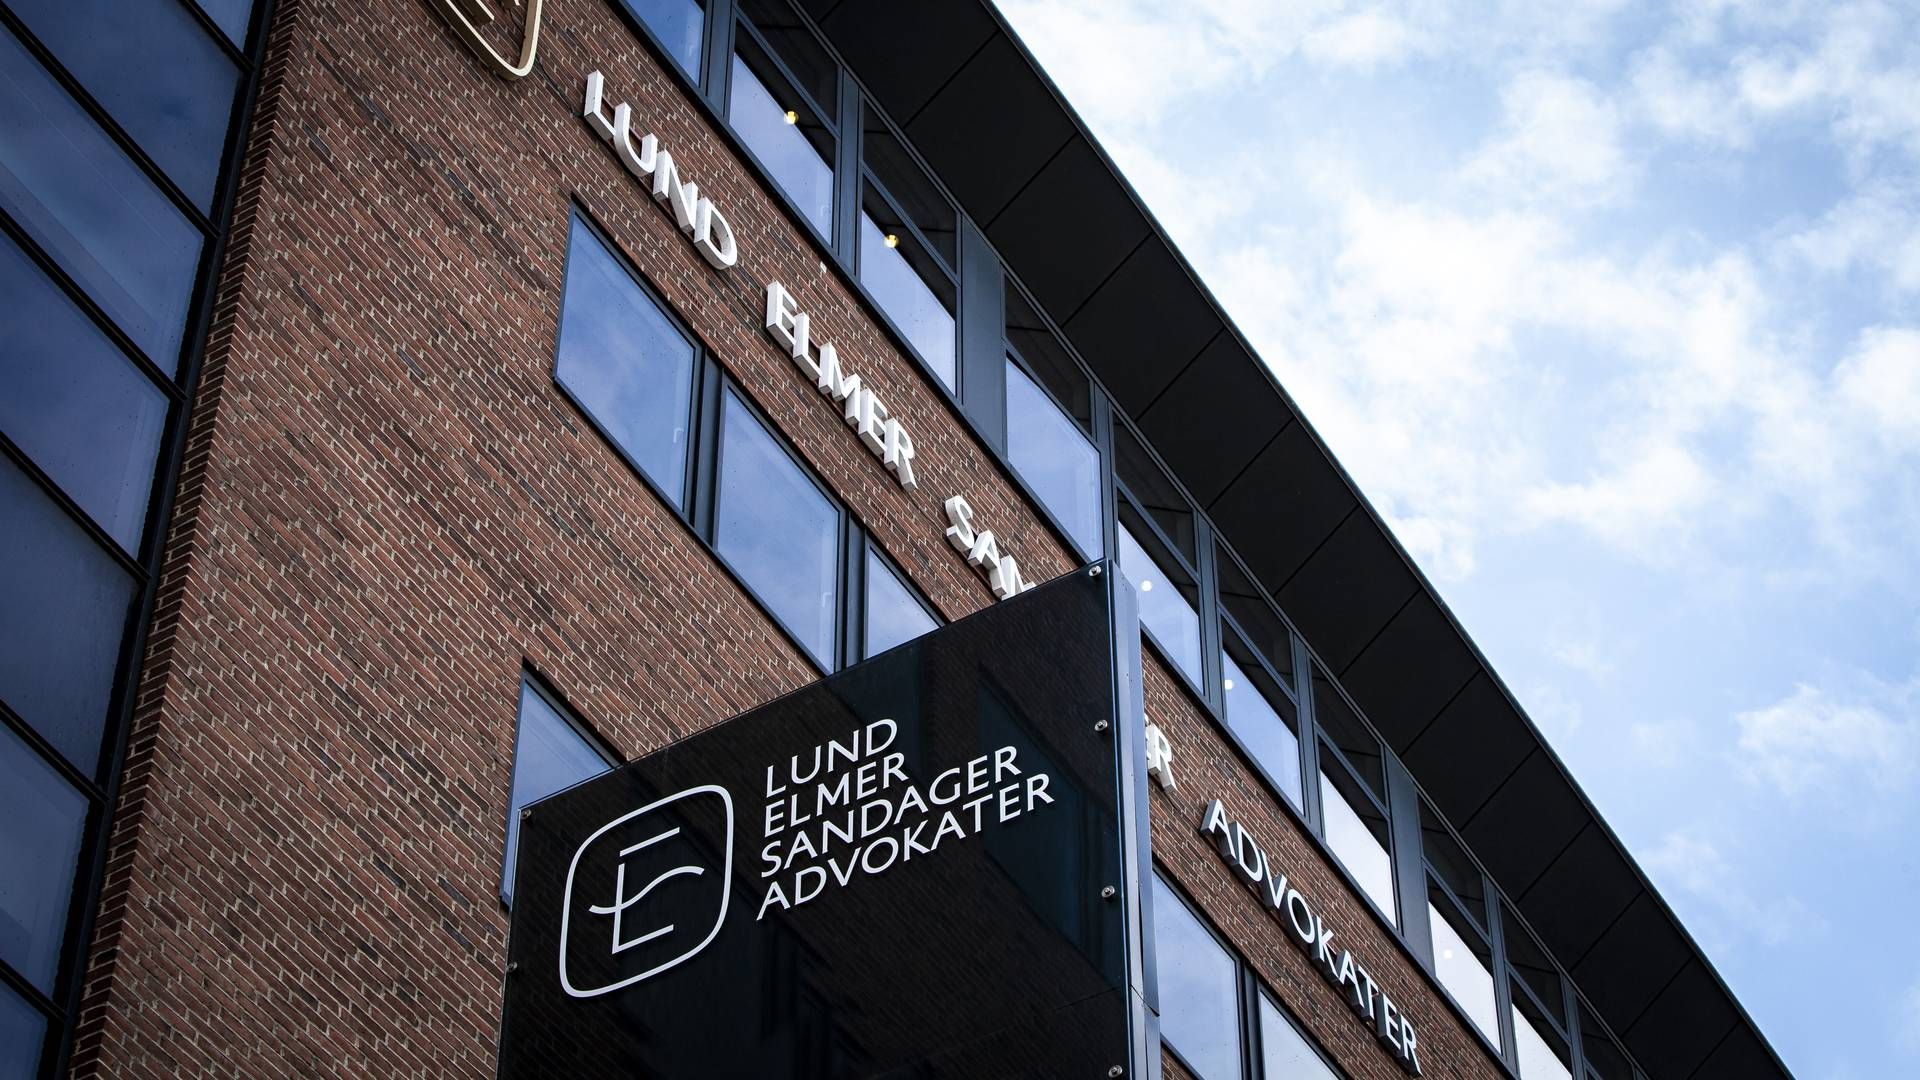 Lund Elmer Sandager beskæftiger ca. 110 medarbejdere, heraf 45 jurister. | Foto: SEES media